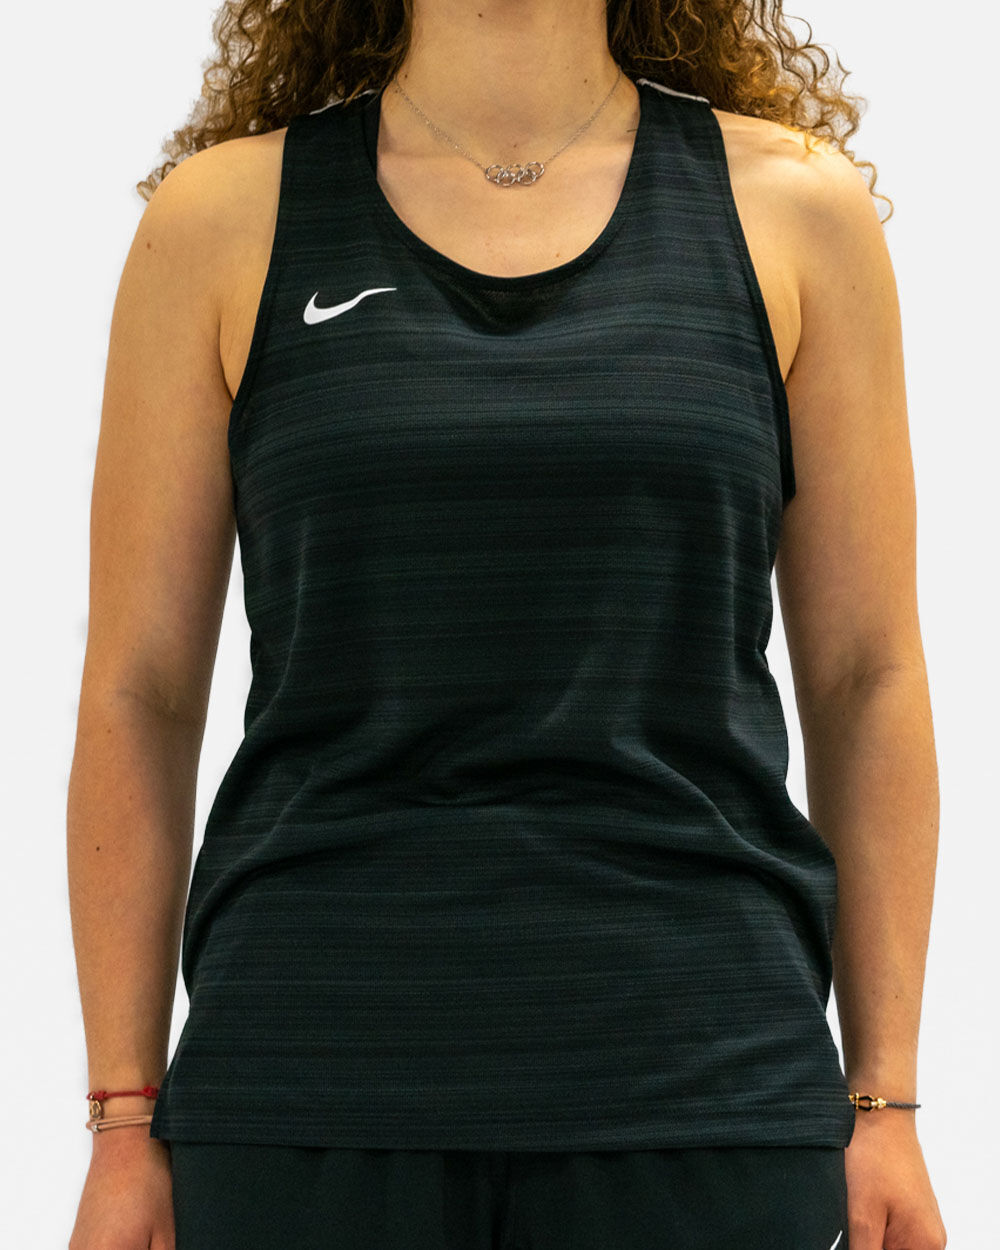 Camiseta sin mangas de running Nike Stock Negro para Mujeres - NT0301-010